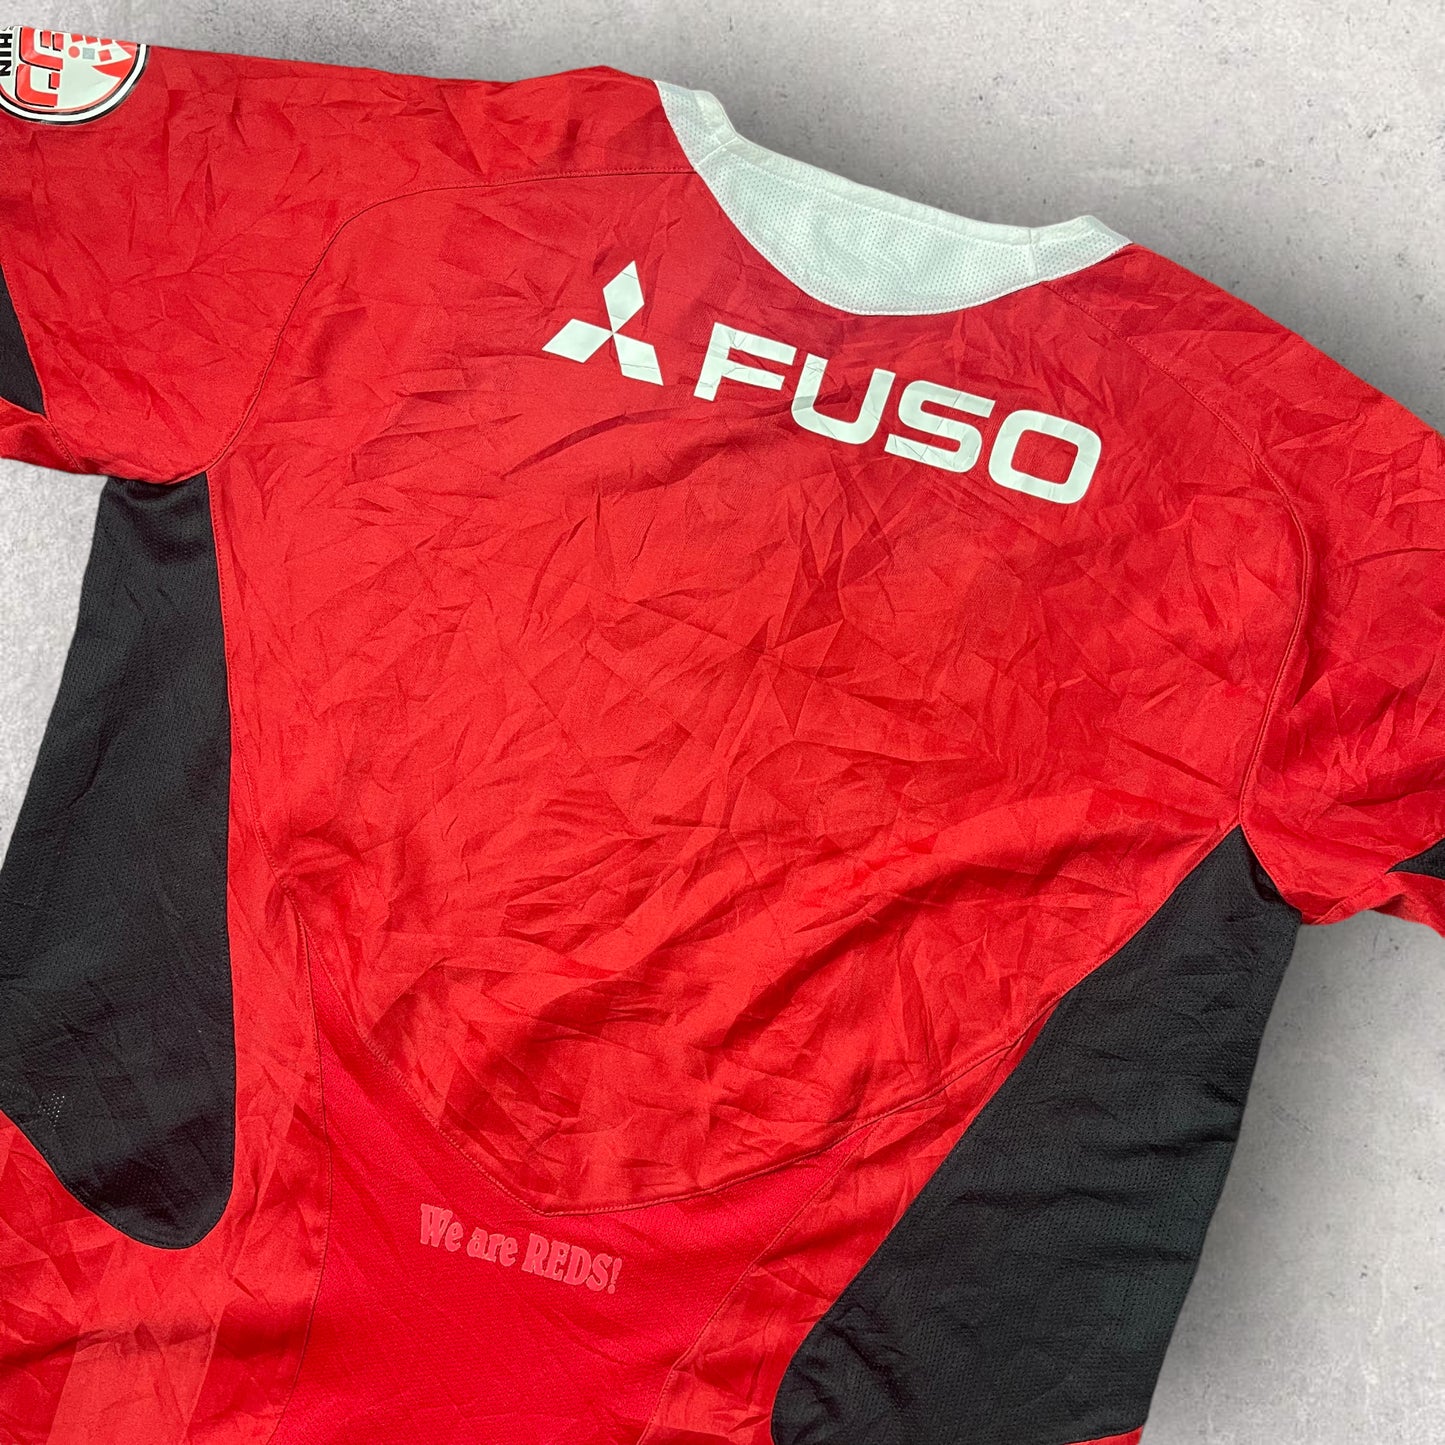 Retro Nike Urawa Red Diamonds FC Football Jersey - X LARGE